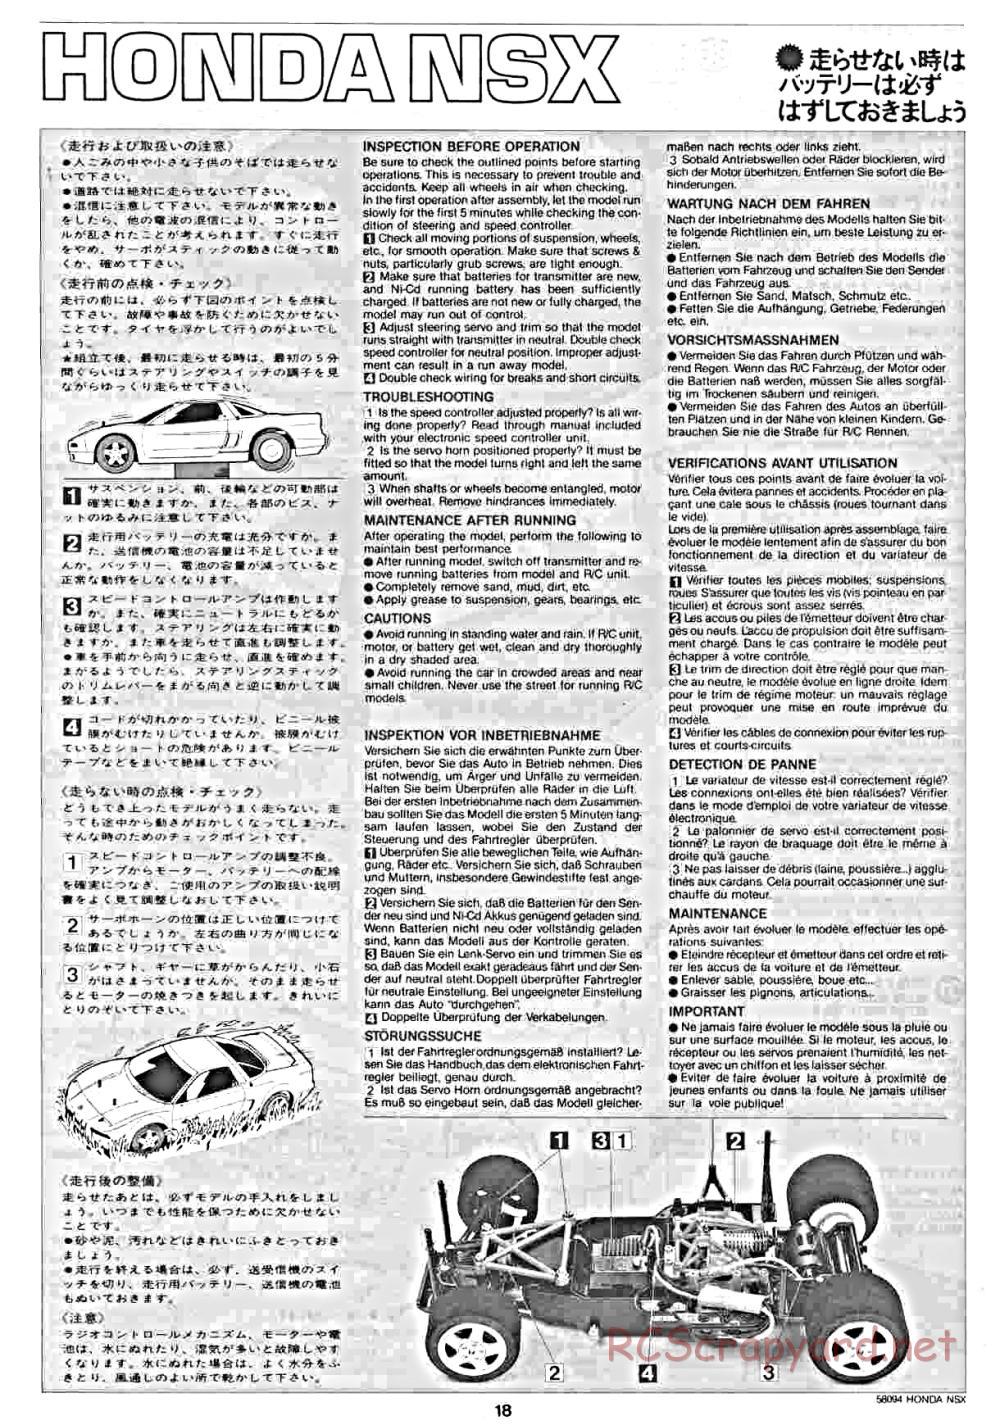 Tamiya - Honda NSX - 58094 - Manual - Page 18